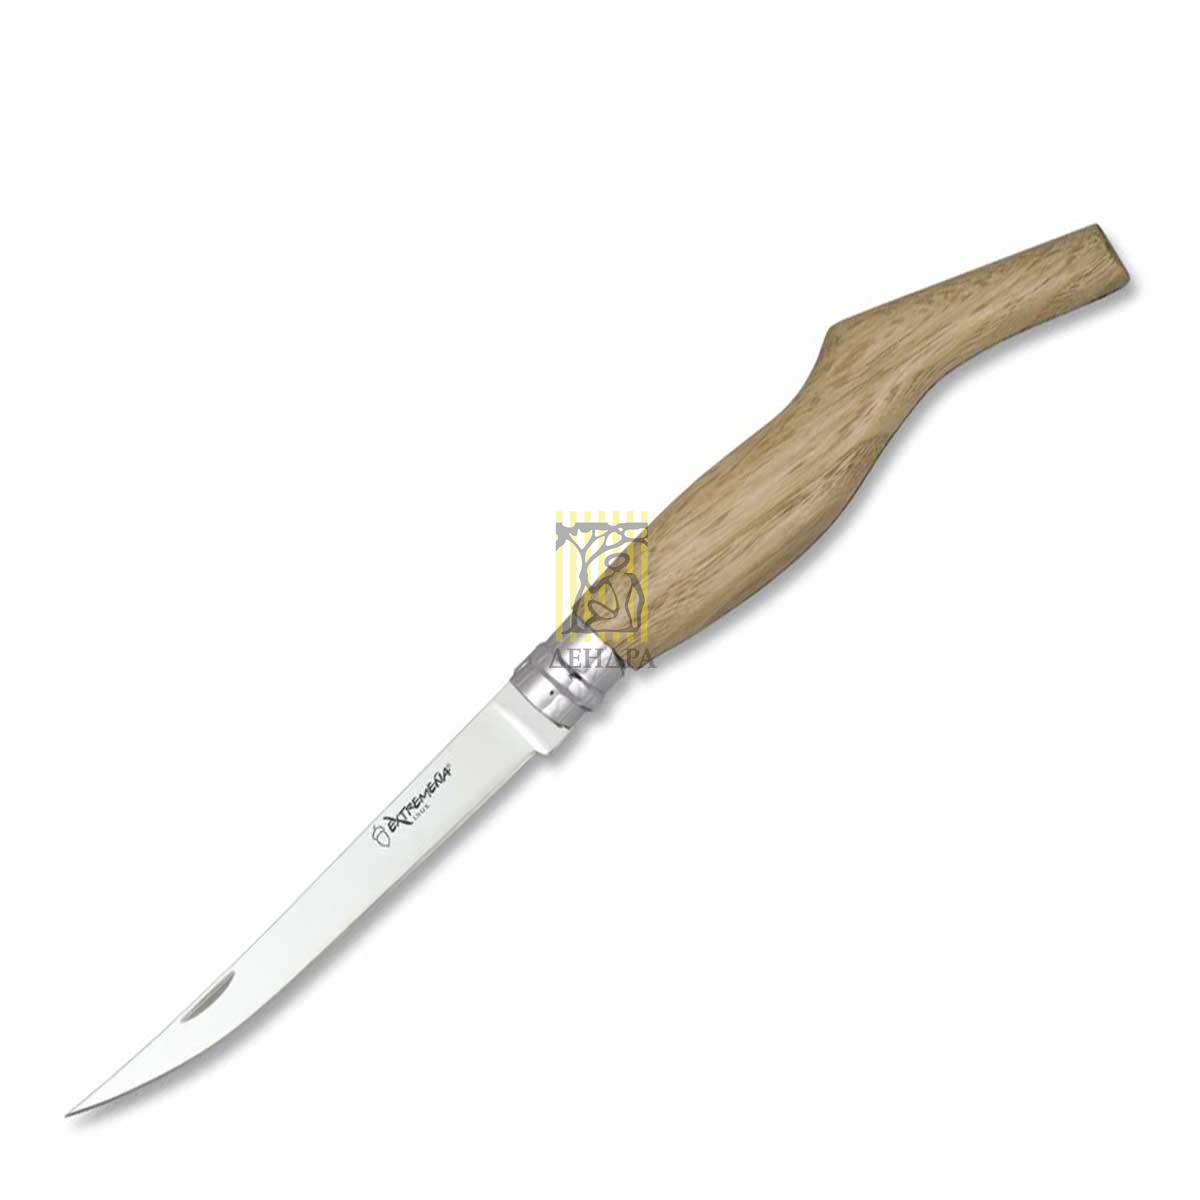 Нож складной Extremeña, длина клинка 15 см, рукоять дерево, подарочная упаковка